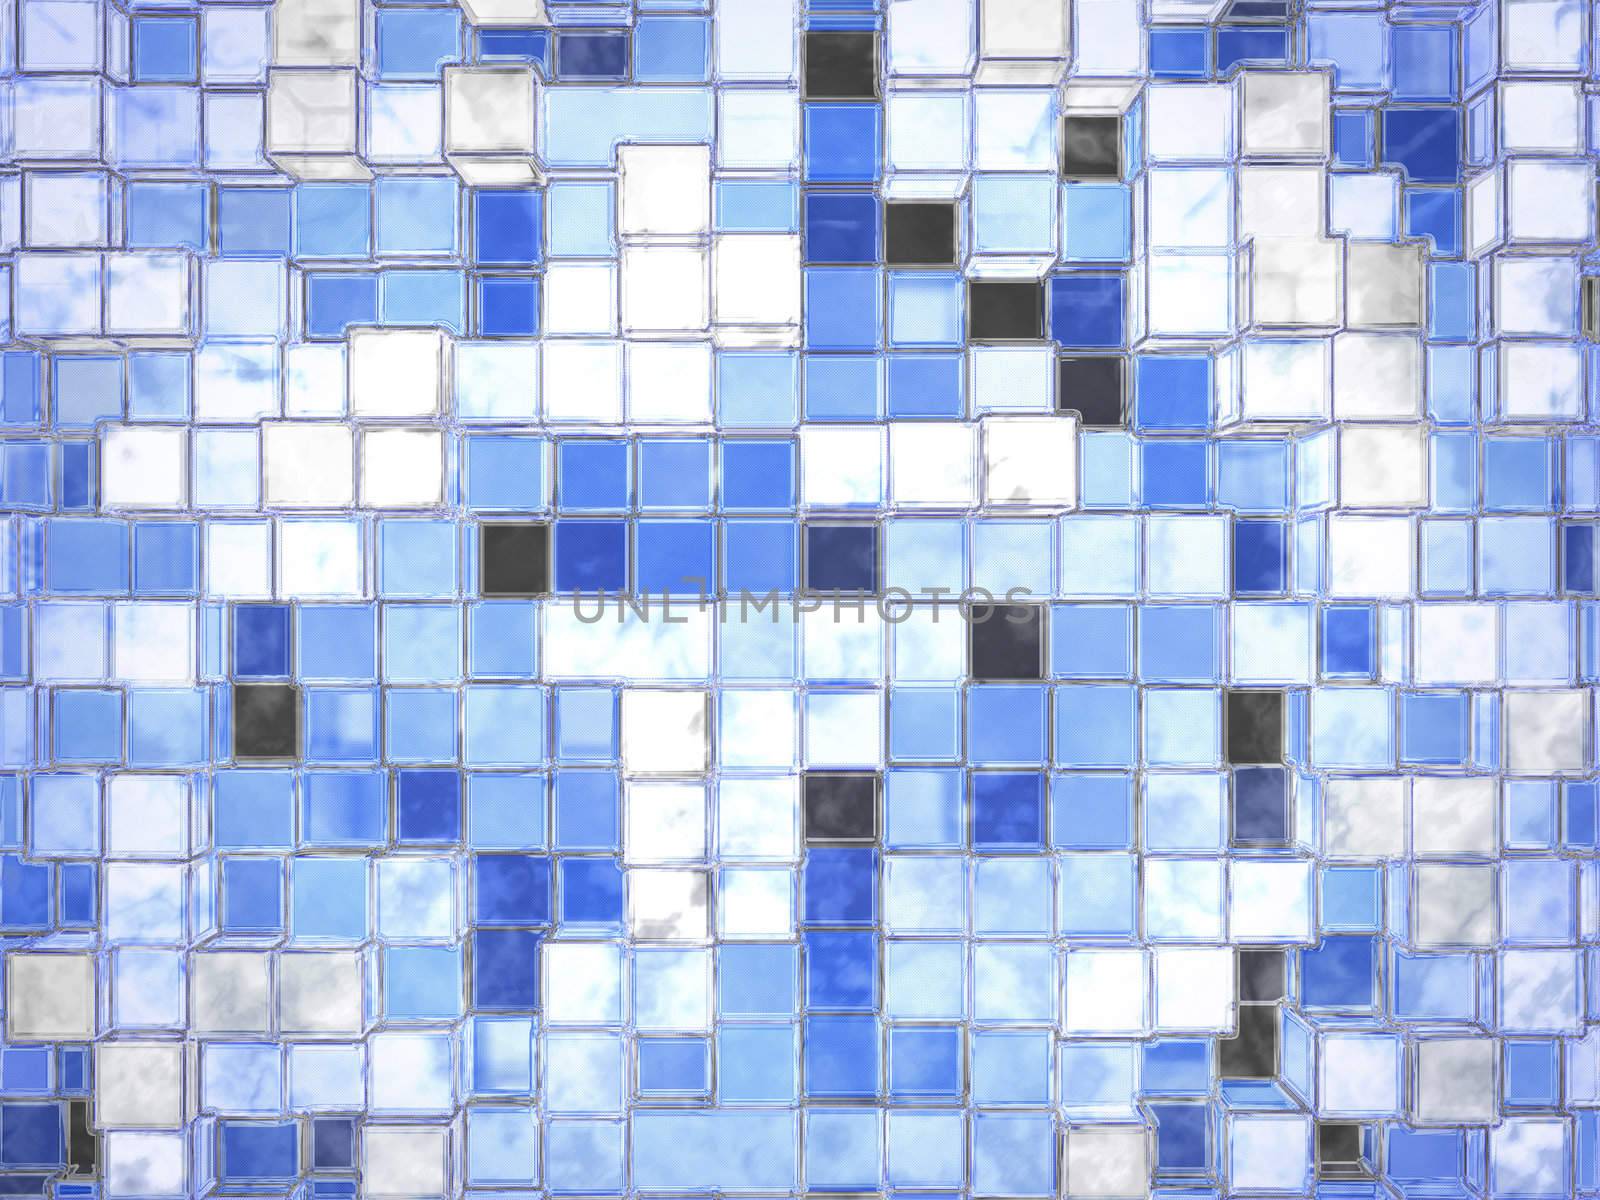 Abstract Cartoony Blue Square Blocks